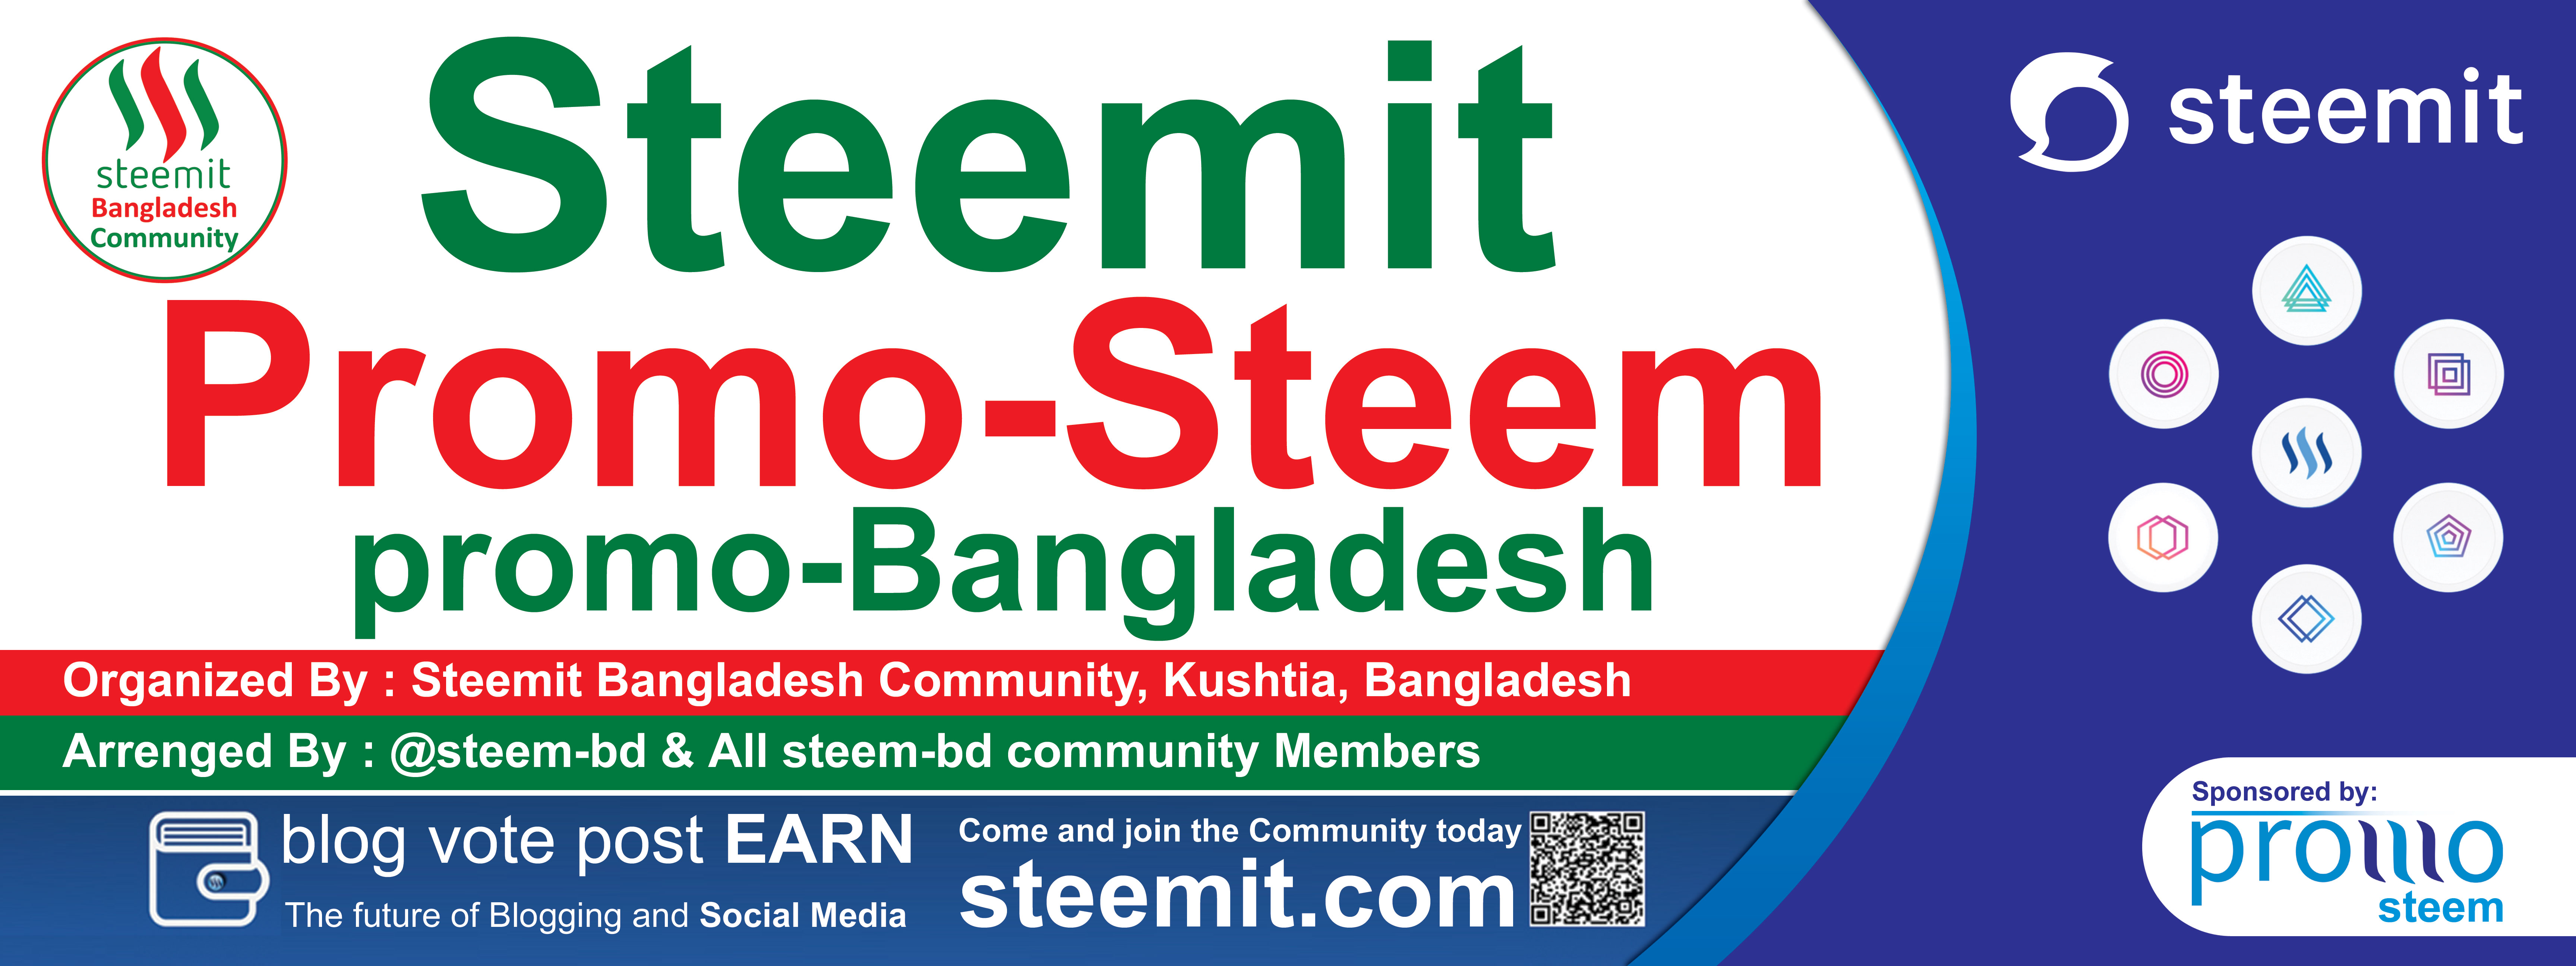 Steemit-Meet-up-Banner-3.jpg